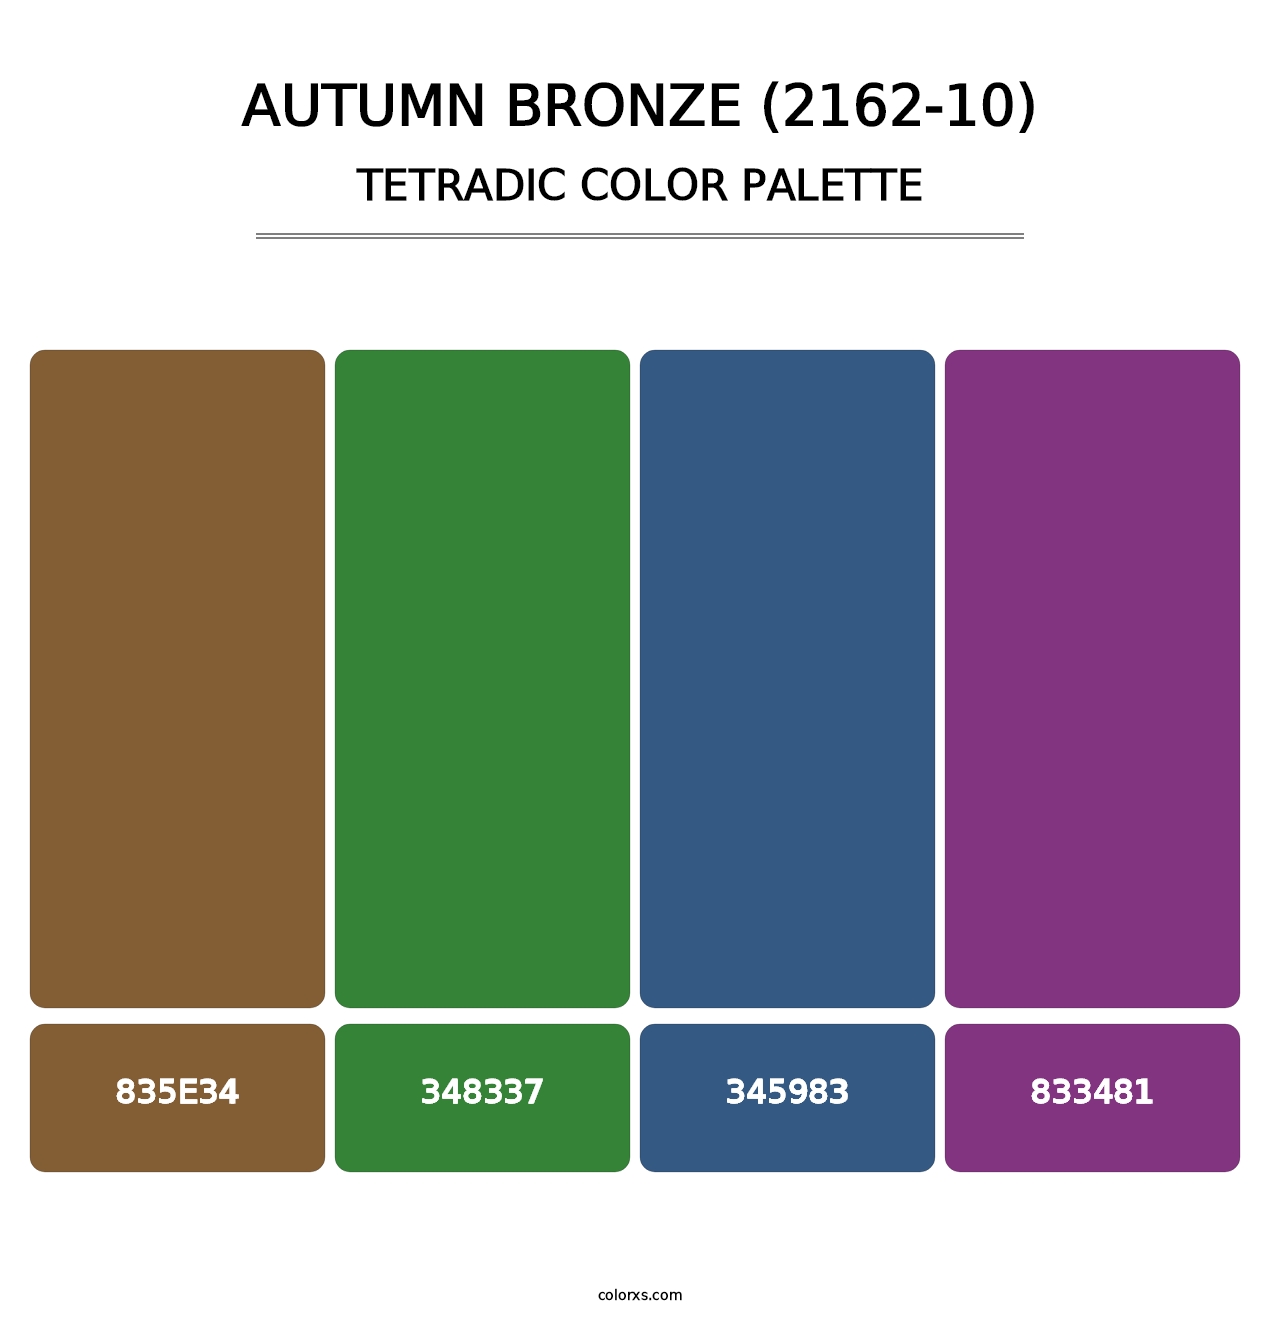 Autumn Bronze (2162-10) - Tetradic Color Palette